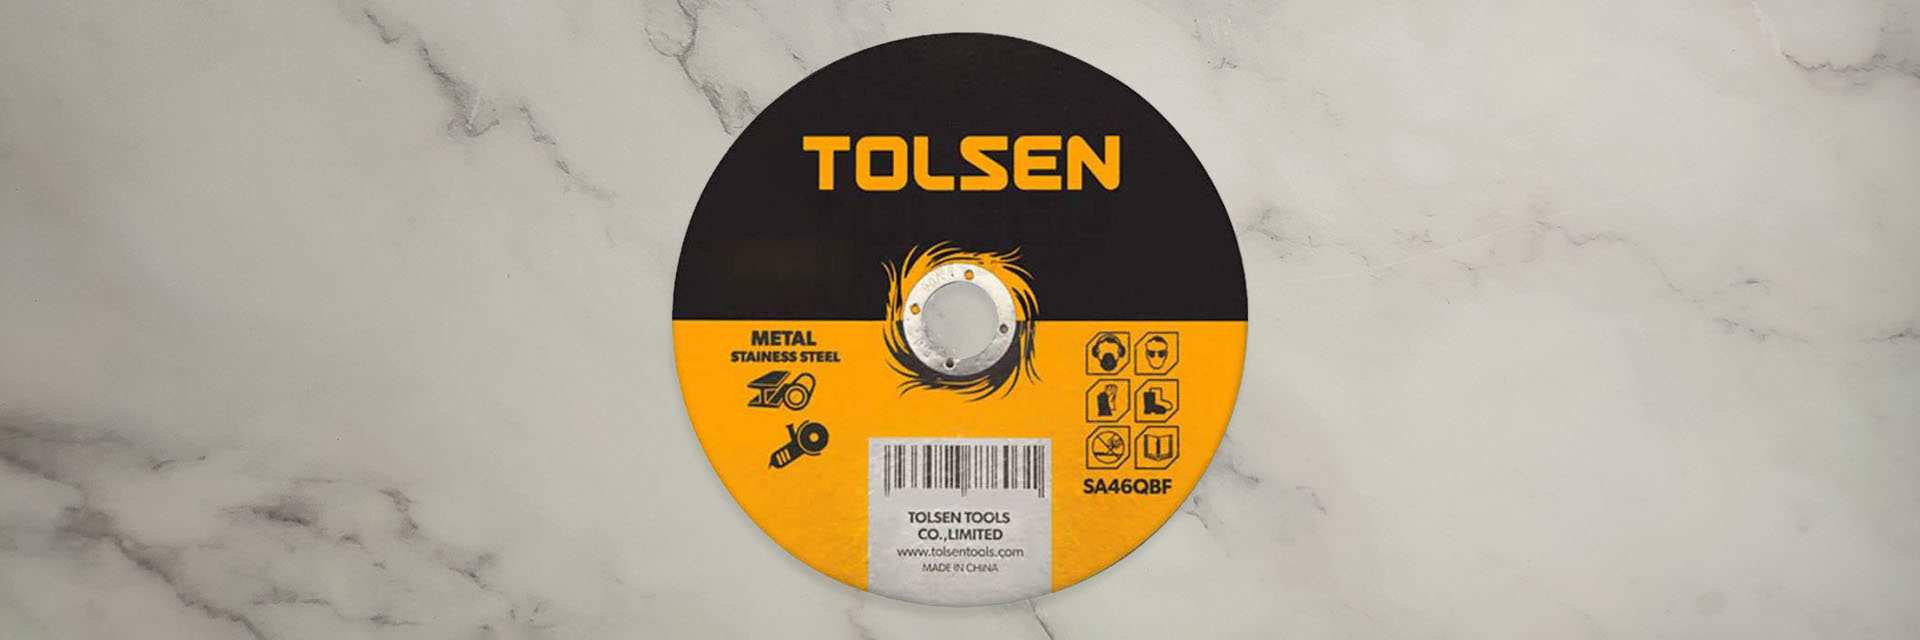 Power tools accessories - Đá cắt mài sắt Tolsen